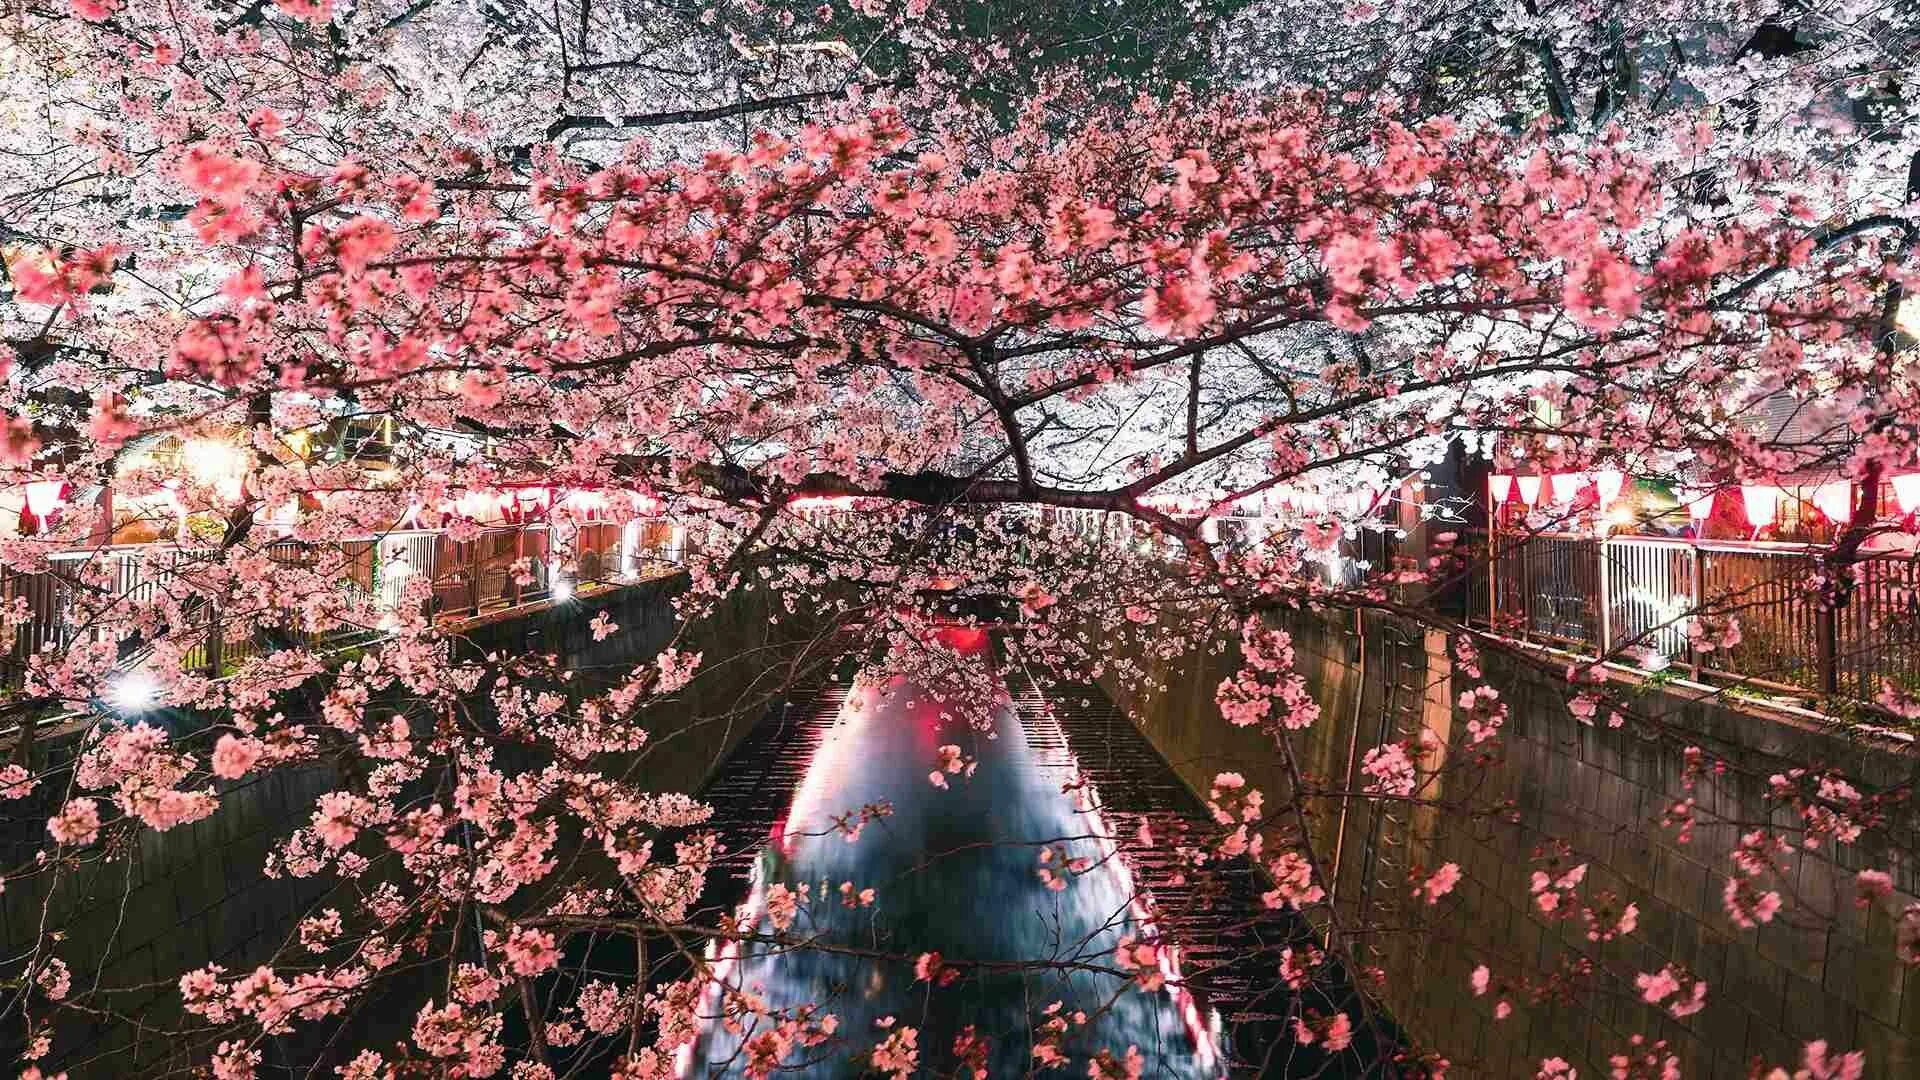 Сакура кустовая "Ханами". Япония Токио Сакура. Праздник цветения вишни Сакуры. Праздник цветения вишни Сакуры в Японии.